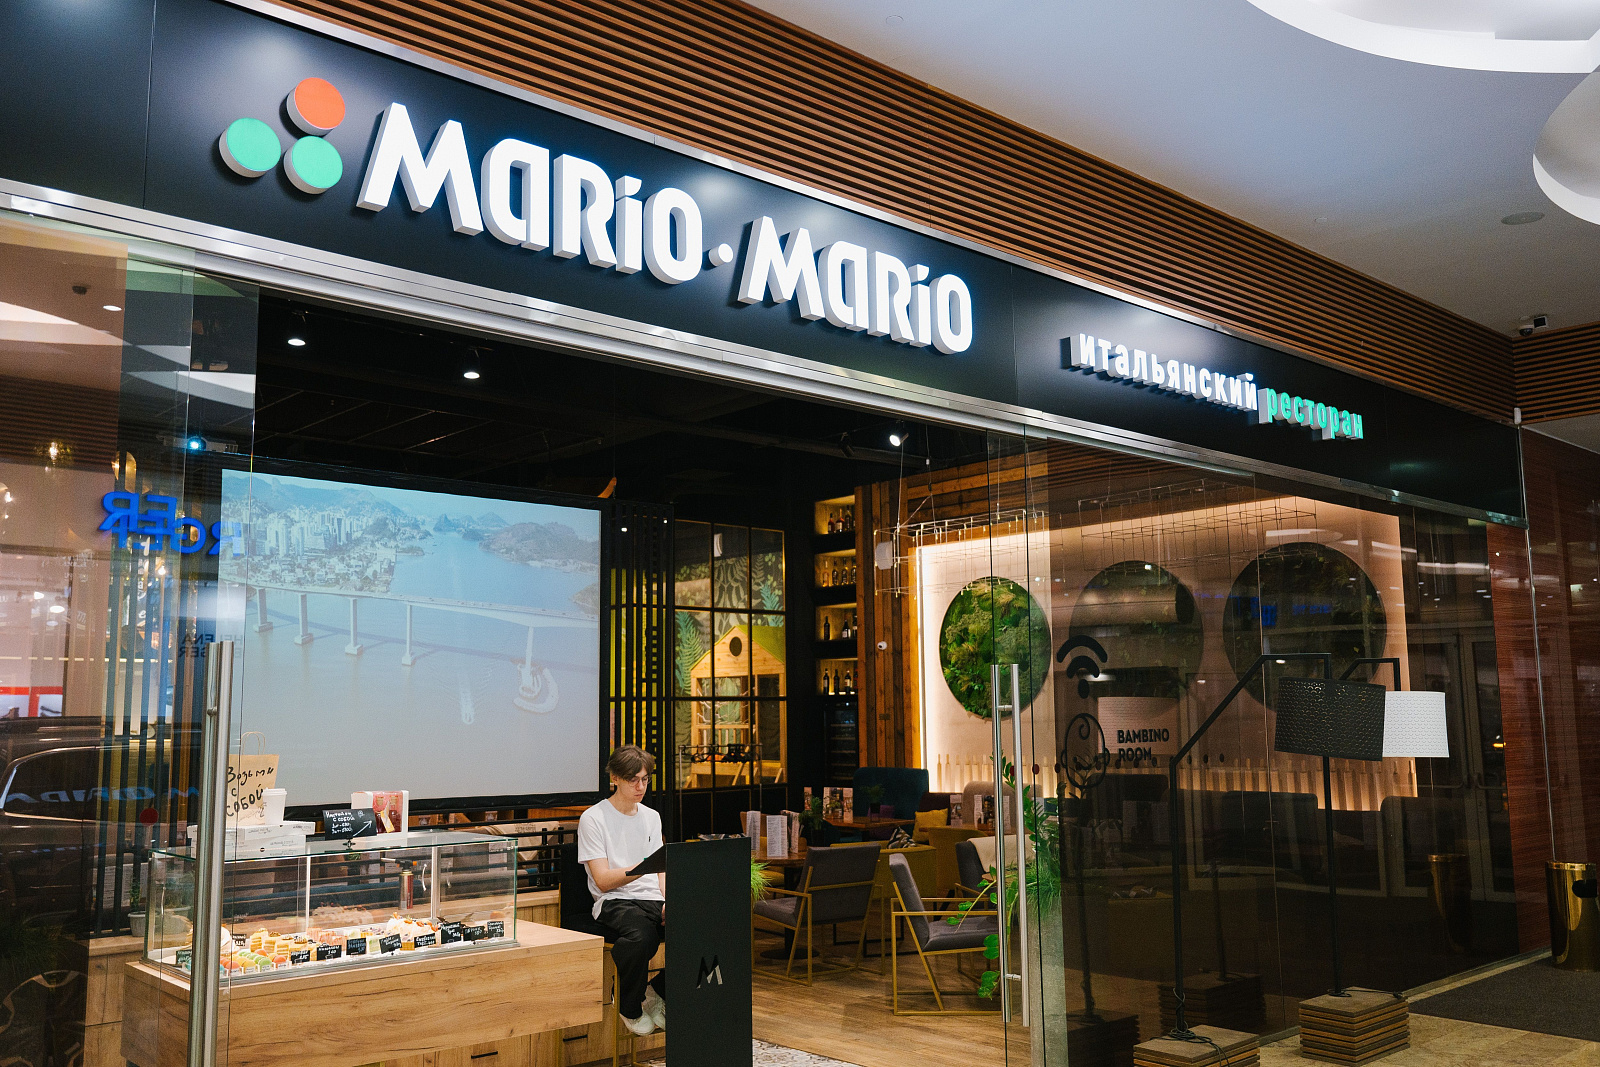 Ресторан «Mario-Mario»-3